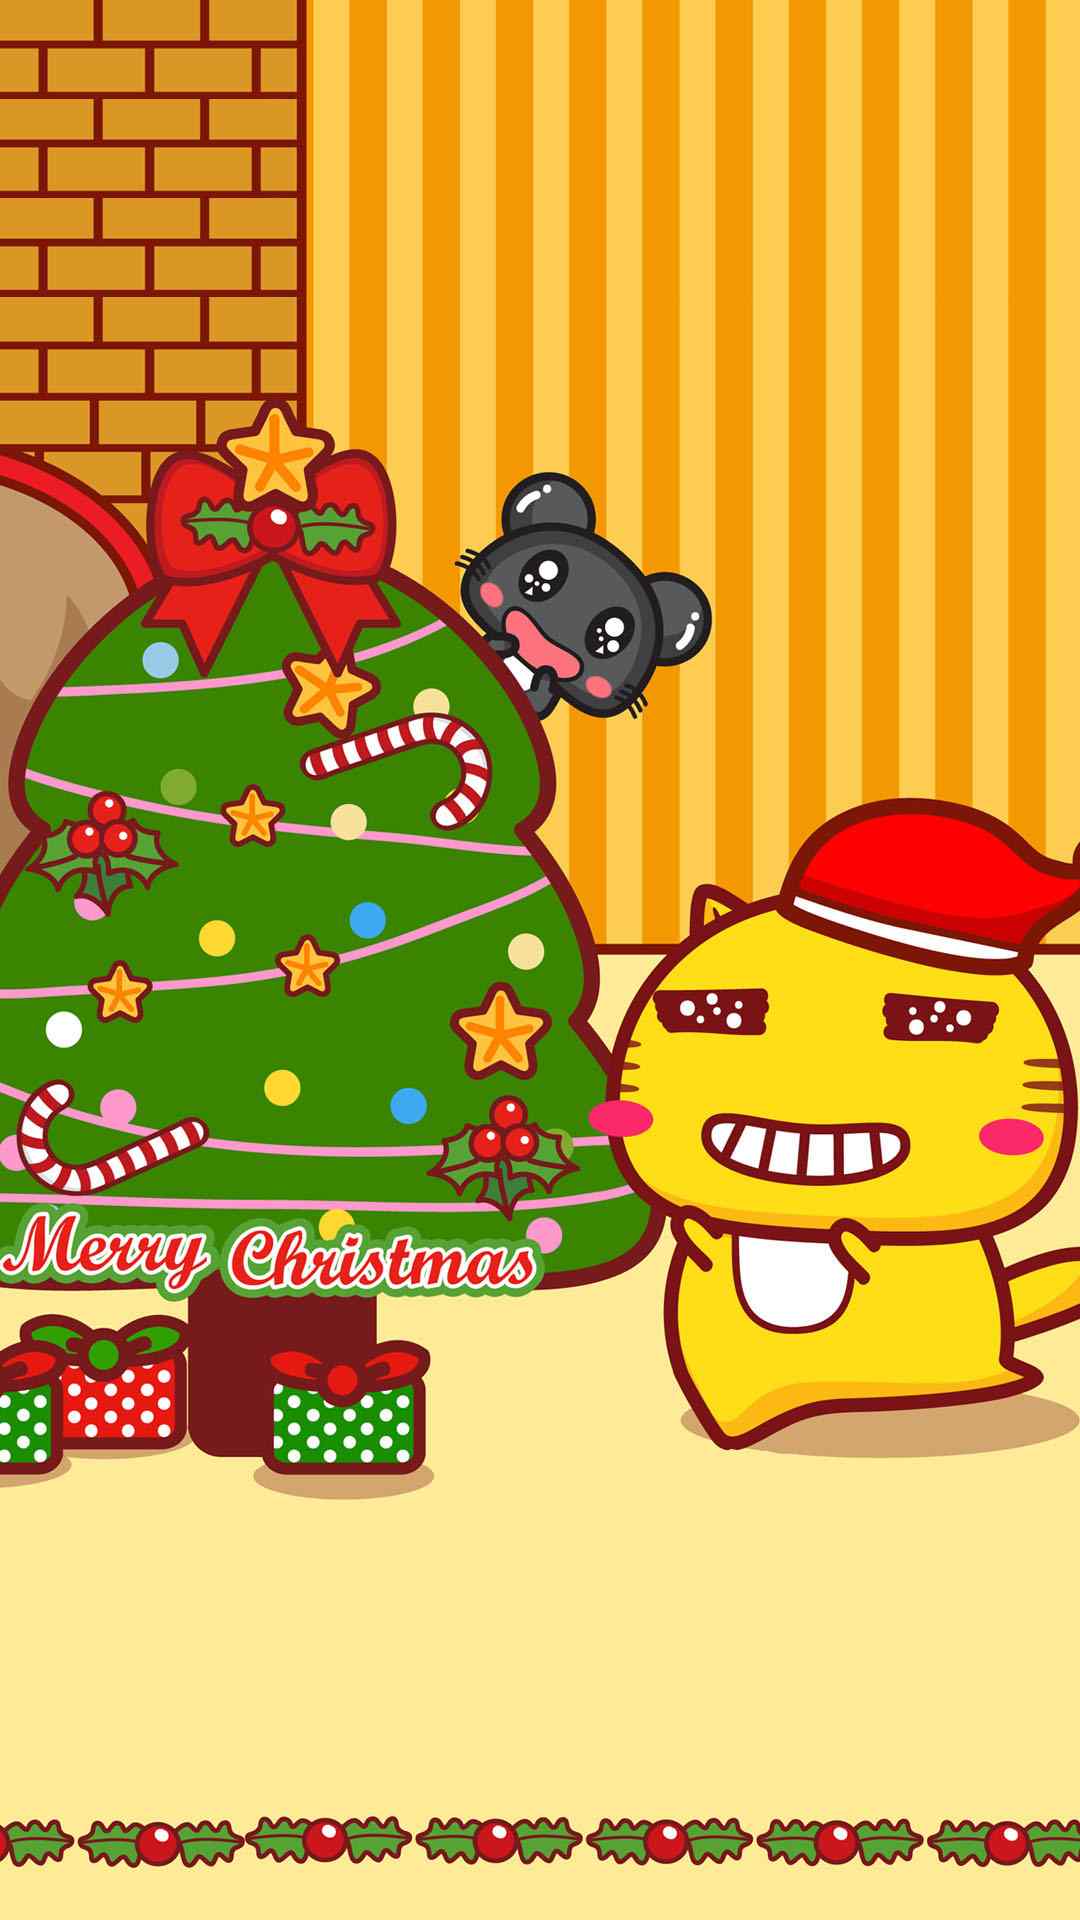 哈咪猫圣诞节可爱动漫手机壁纸